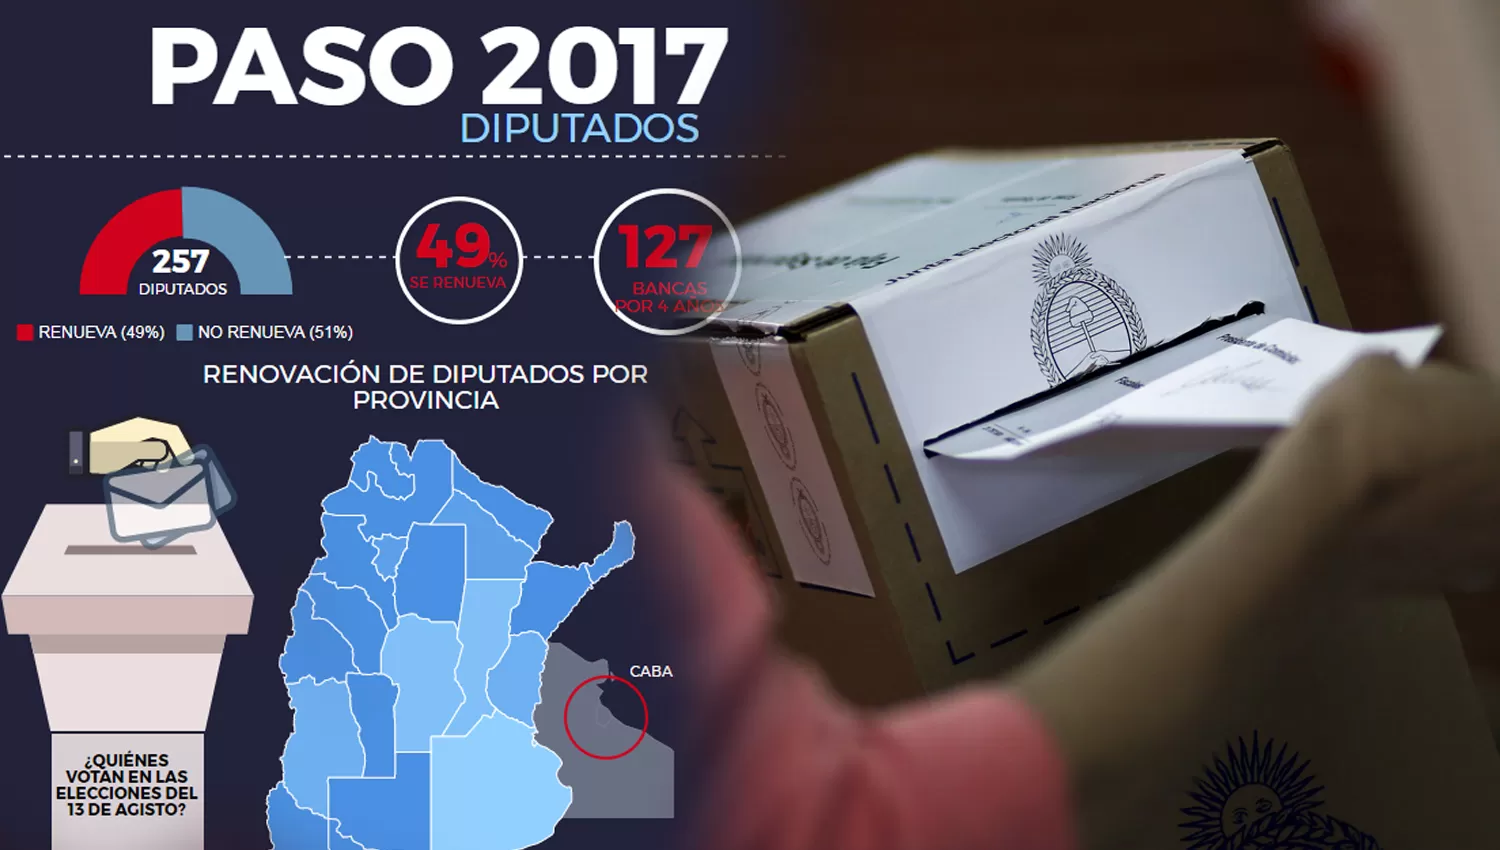 Interactivo: ¿qué se elige en las PASO 2017 y quiénes deben votar?